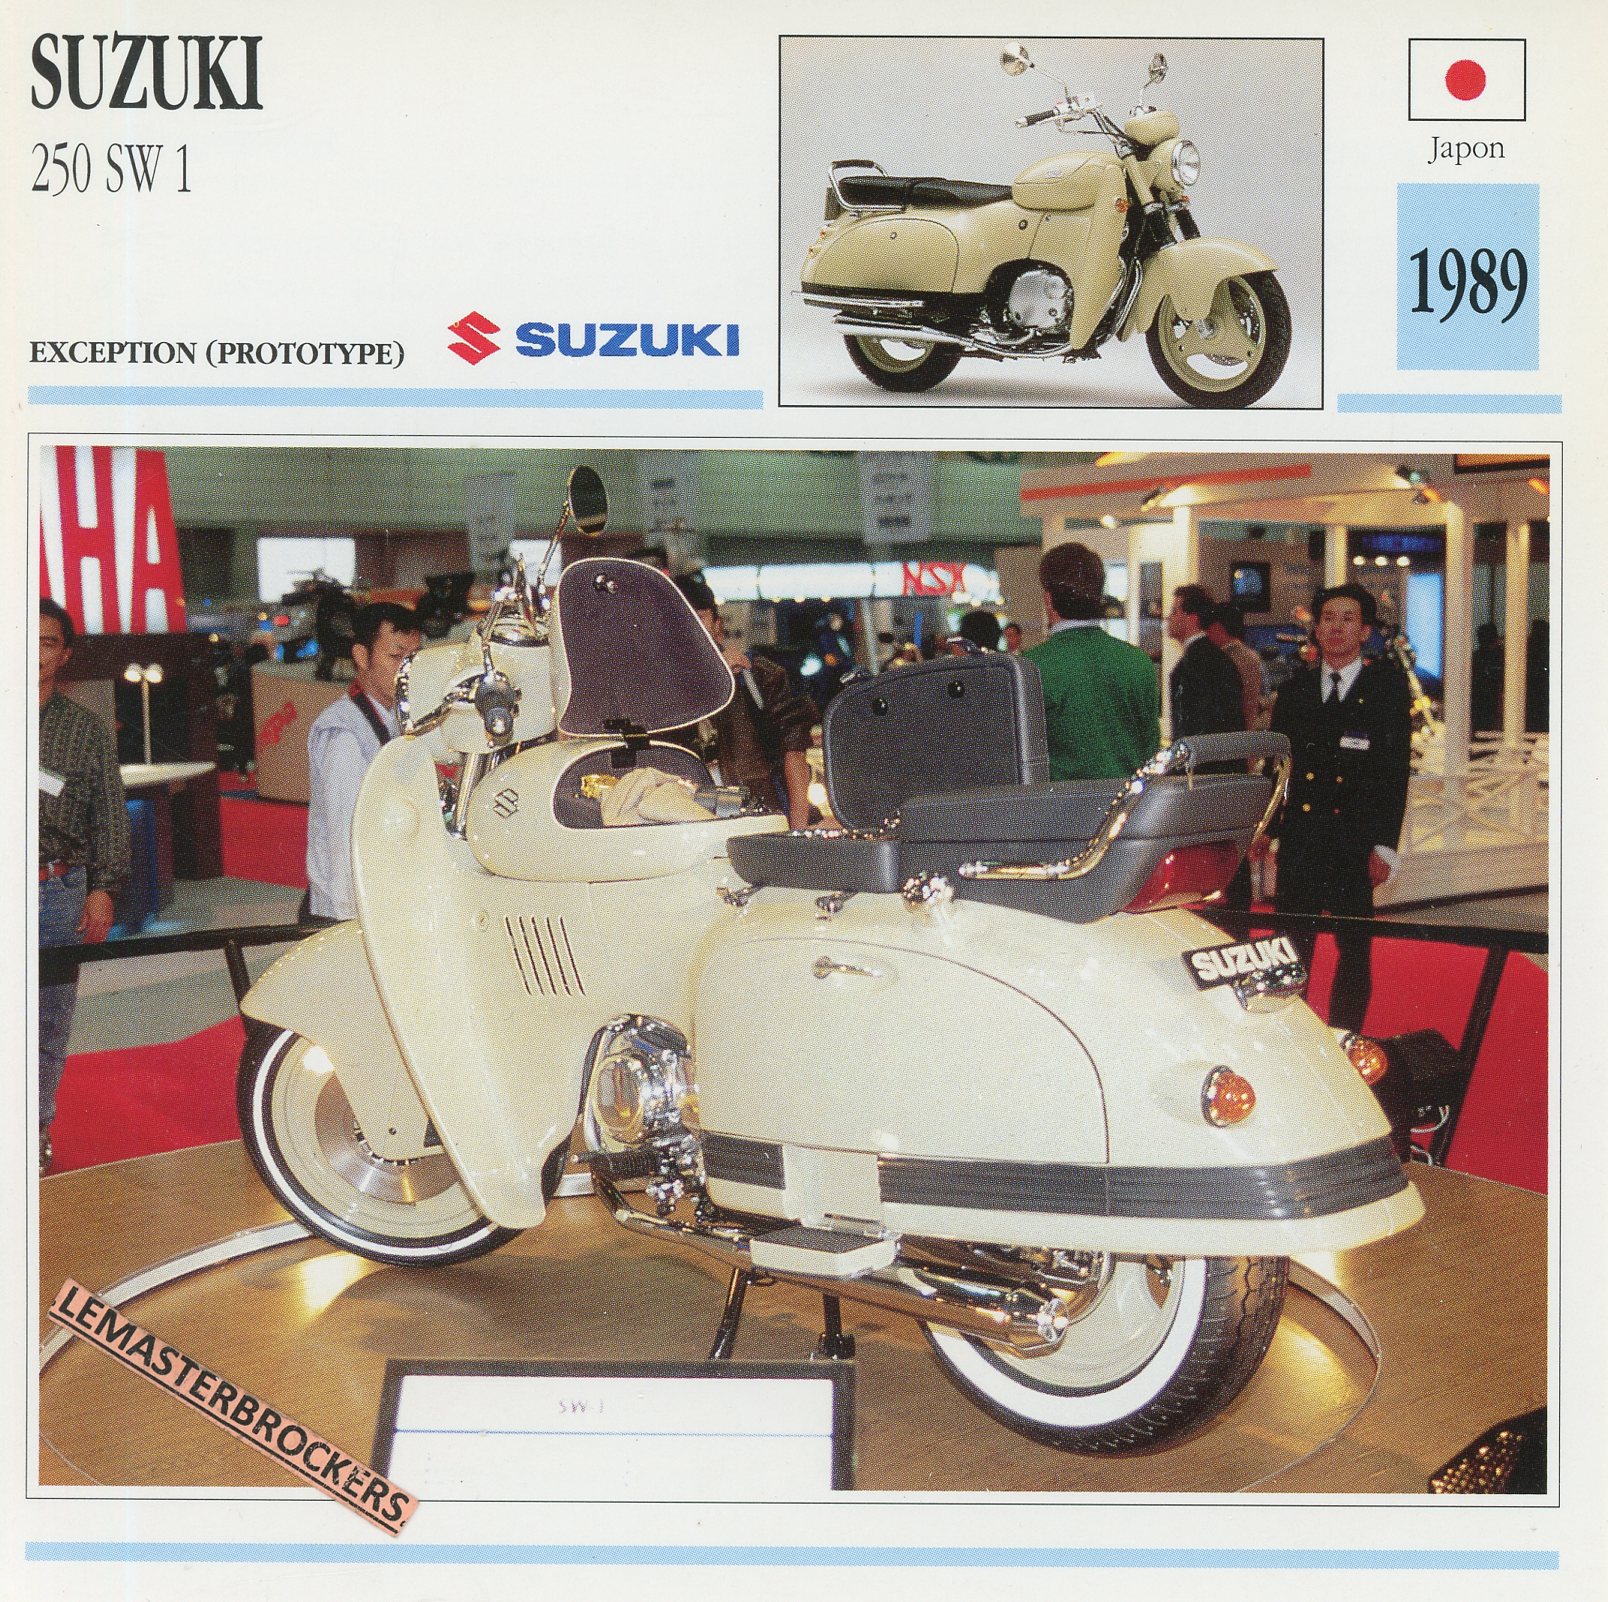 SUZUKI-250-SW1-1989-FICHE-MOTO-LEMASTERBROCKERS